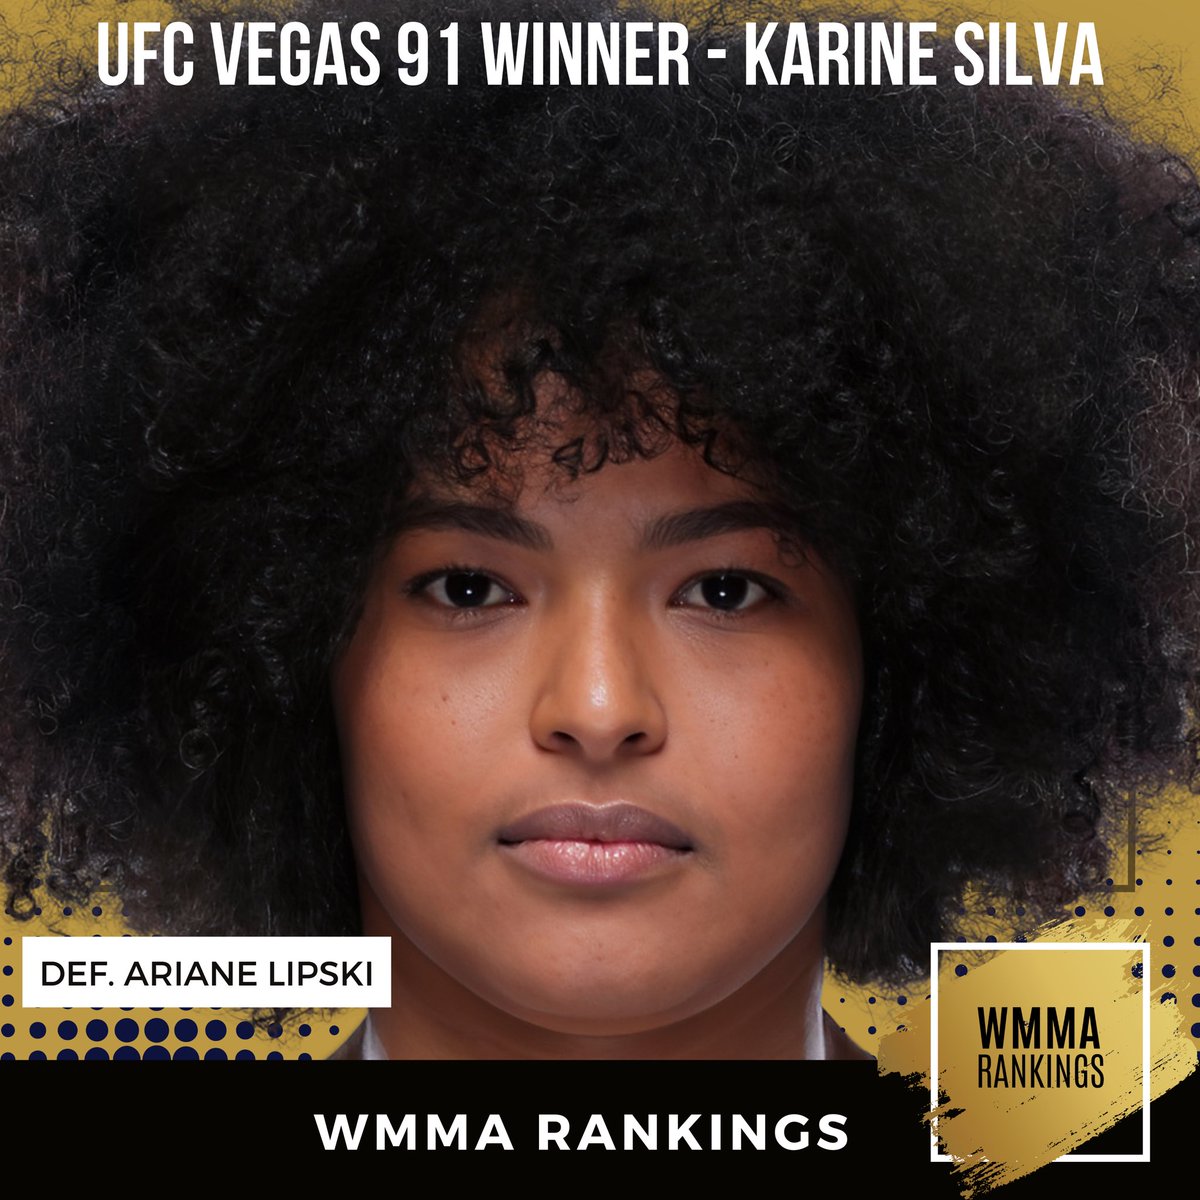 #UFCVegas91 results: 🇧🇷 Karine Silva def. 🇧🇷 Ariane da Silva via unanimous decision (30-27, 29-28, 29-28) #WMMA #UFC